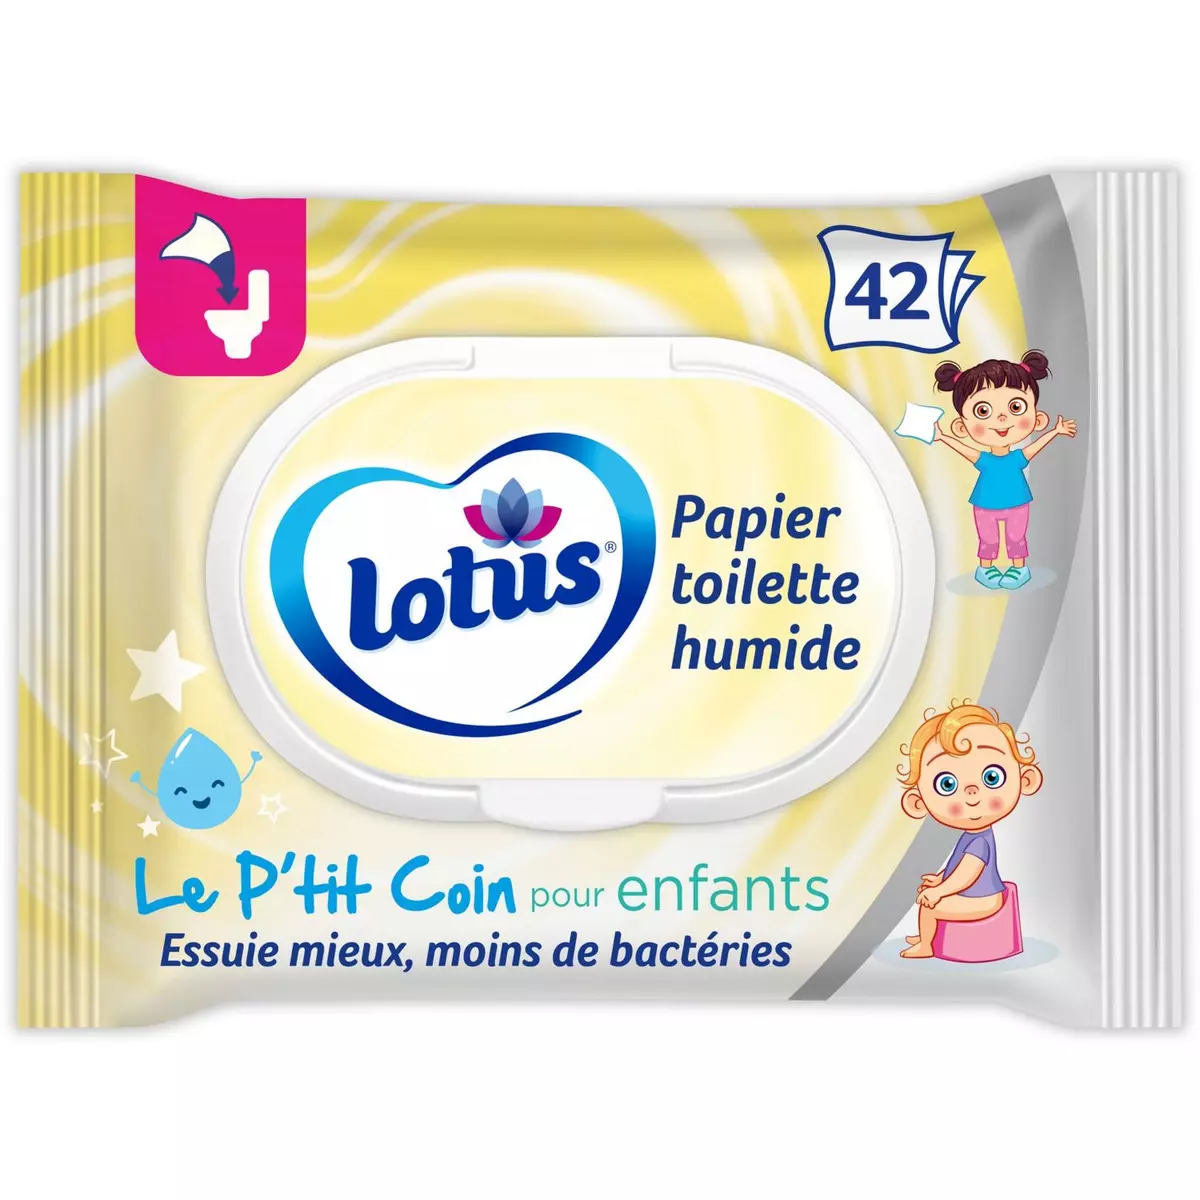 LOTUS Lingettes papier toilette humide blanc pour enfants 42 lingettes